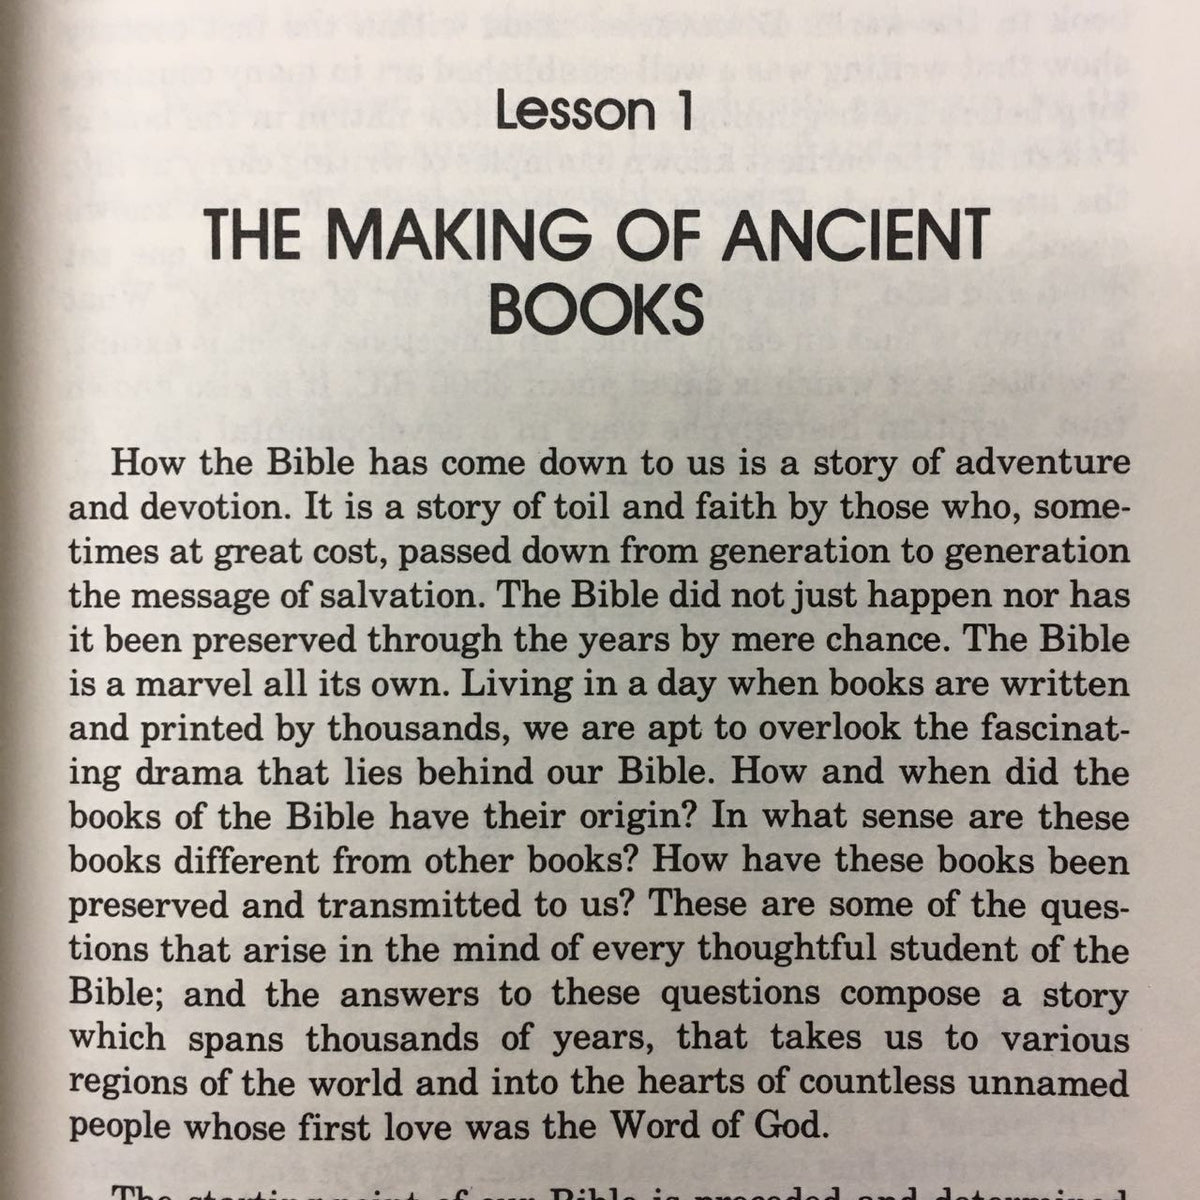 How We Got the Bible (Lightfoot)